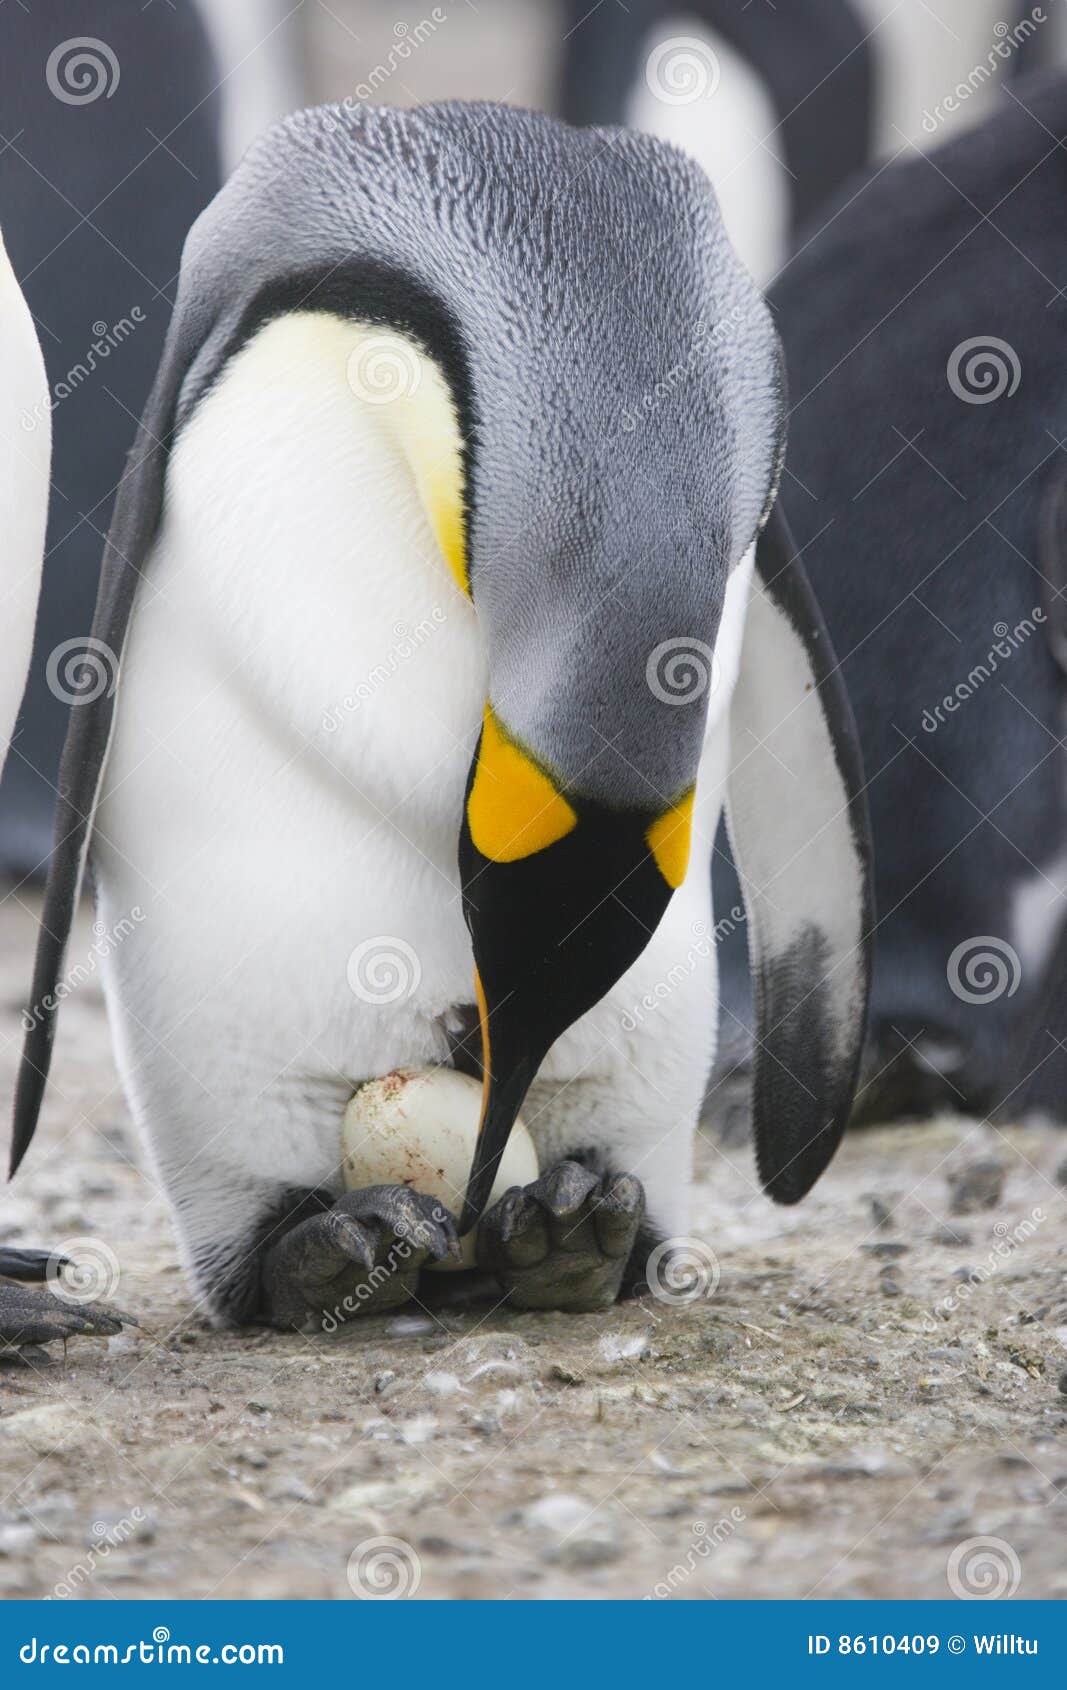 你吃过企鹅蛋么？在阿根廷附近的福克兰岛附近可以吃到这样的巴布亚企鹅蛋，据说有点腥 | 涨姿势